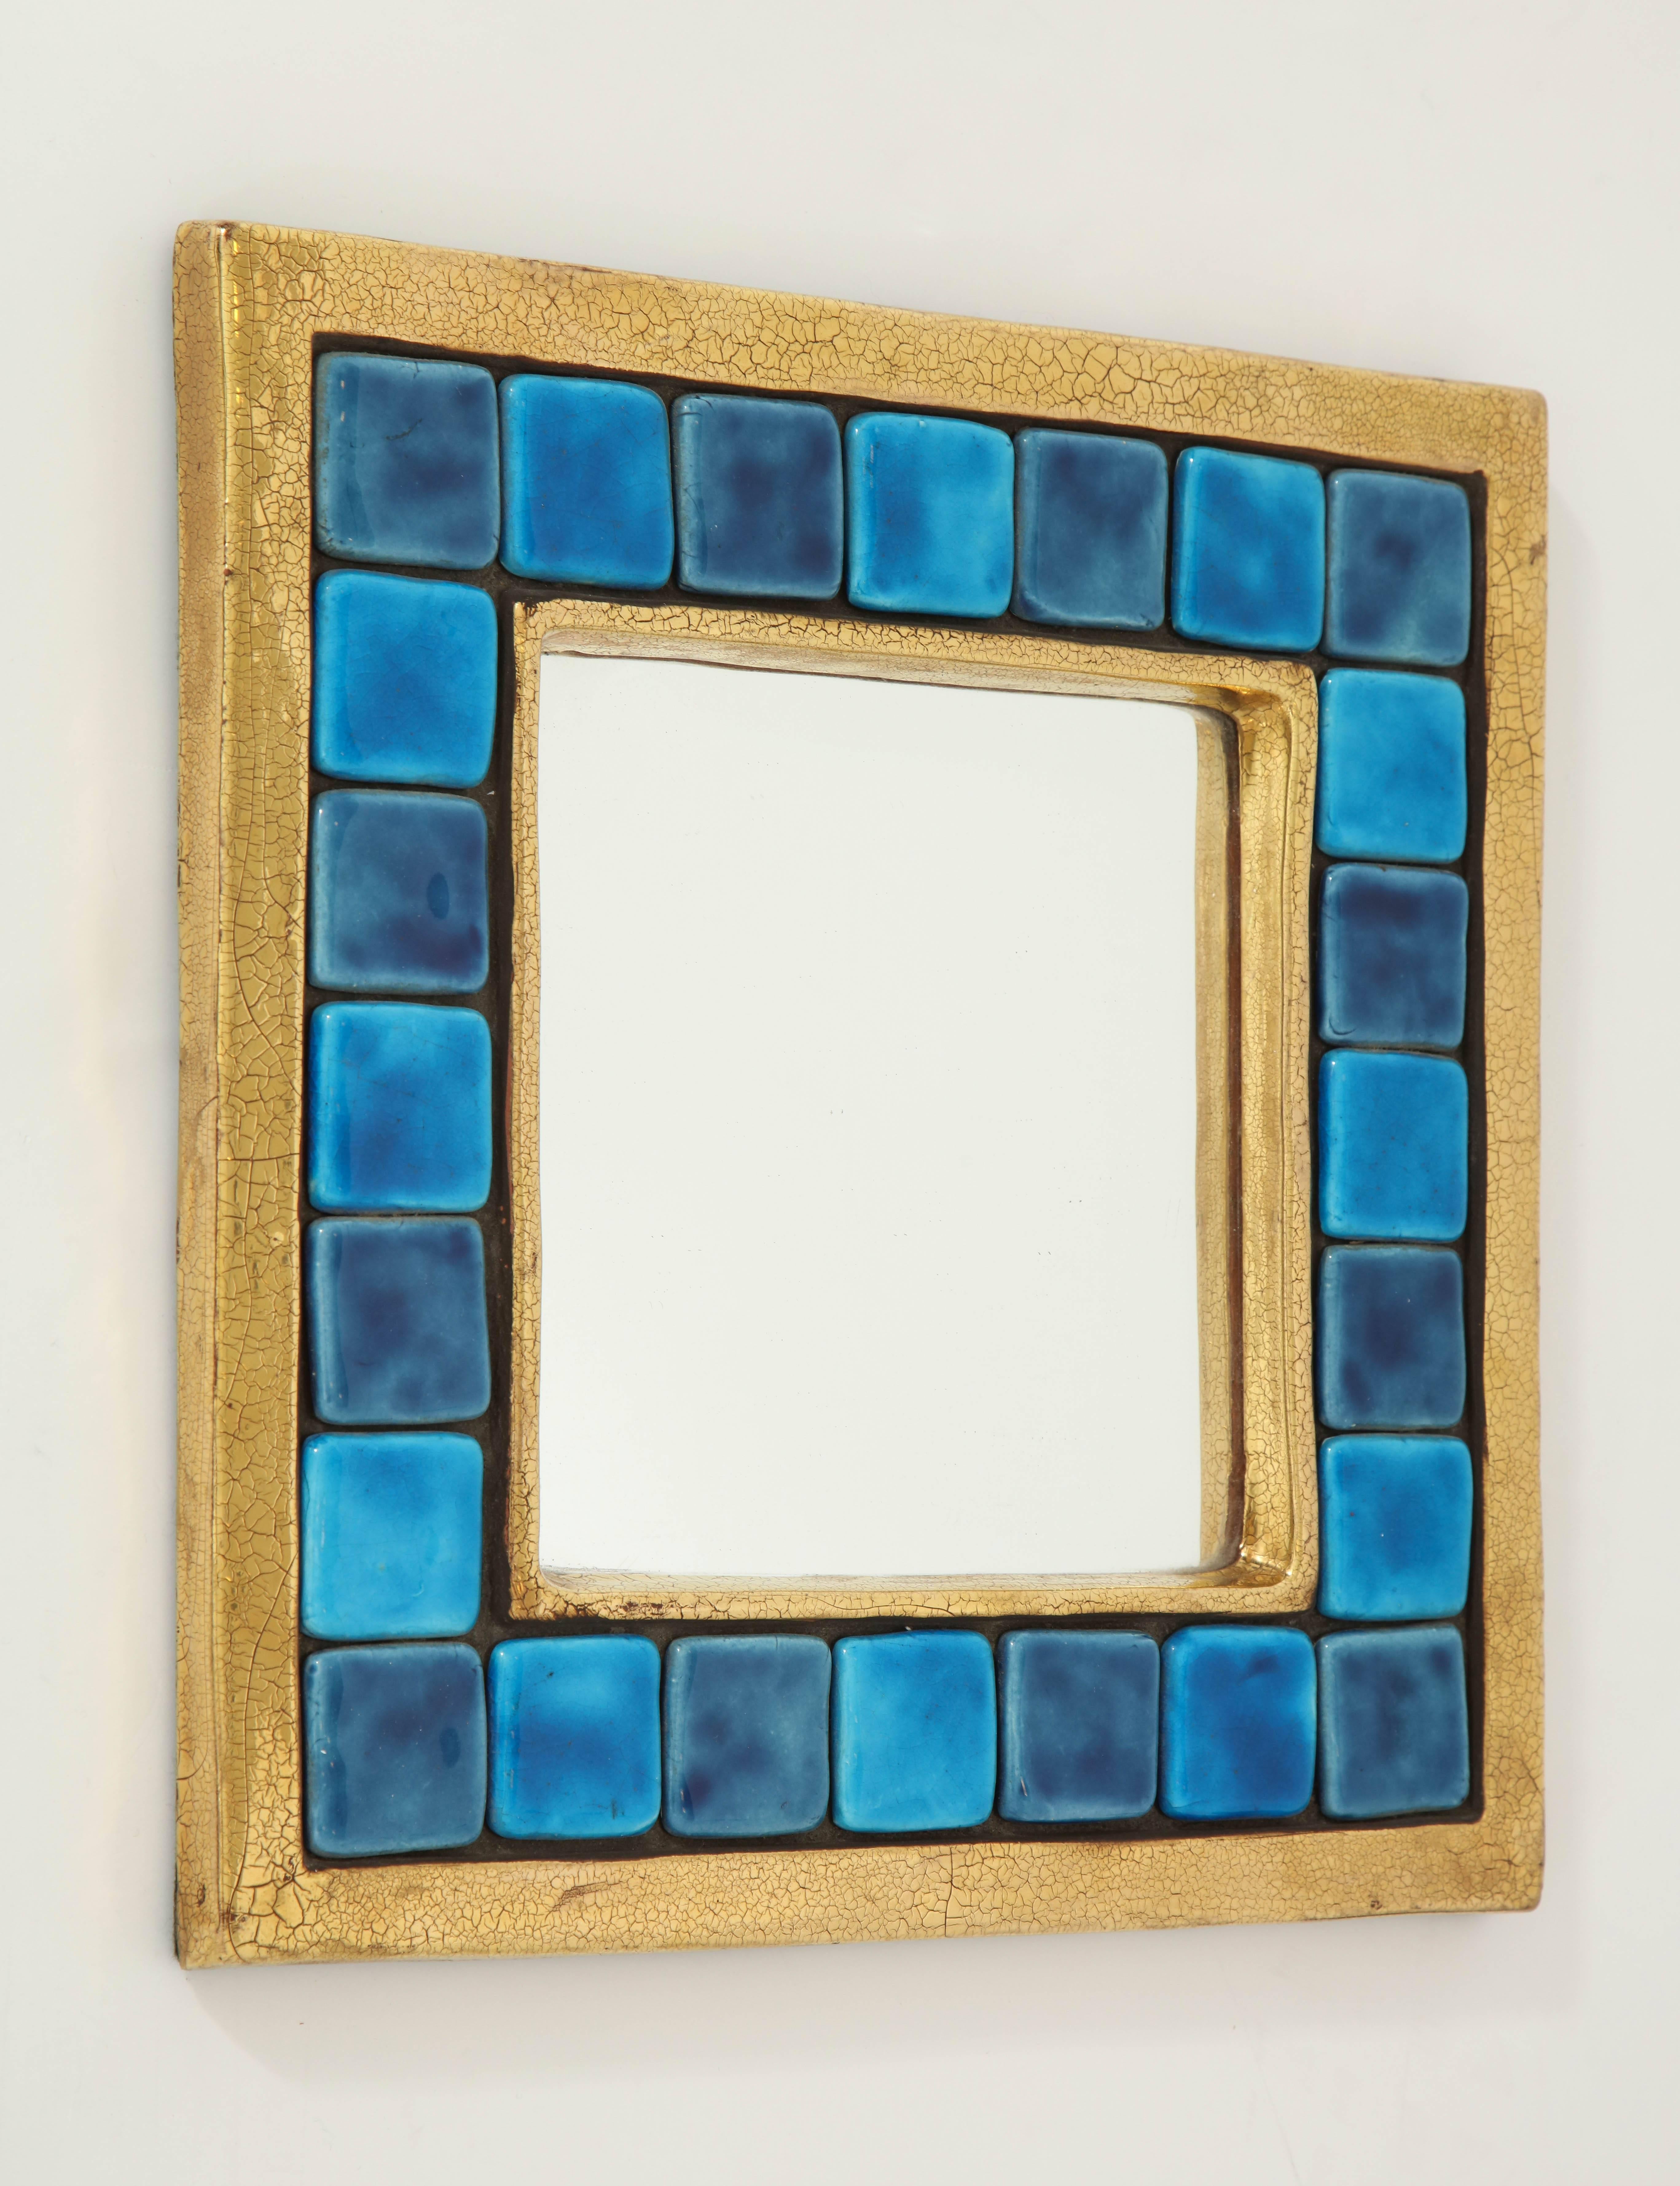 Une œuvre d'art exquise créée par la designer française Mithé Espelt. Le cadre en céramique présente une glaçure dorée craquelée, entourant des carreaux de céramique carrés dans différentes nuances de bleu. Le miroir carré est entouré d'une moulure